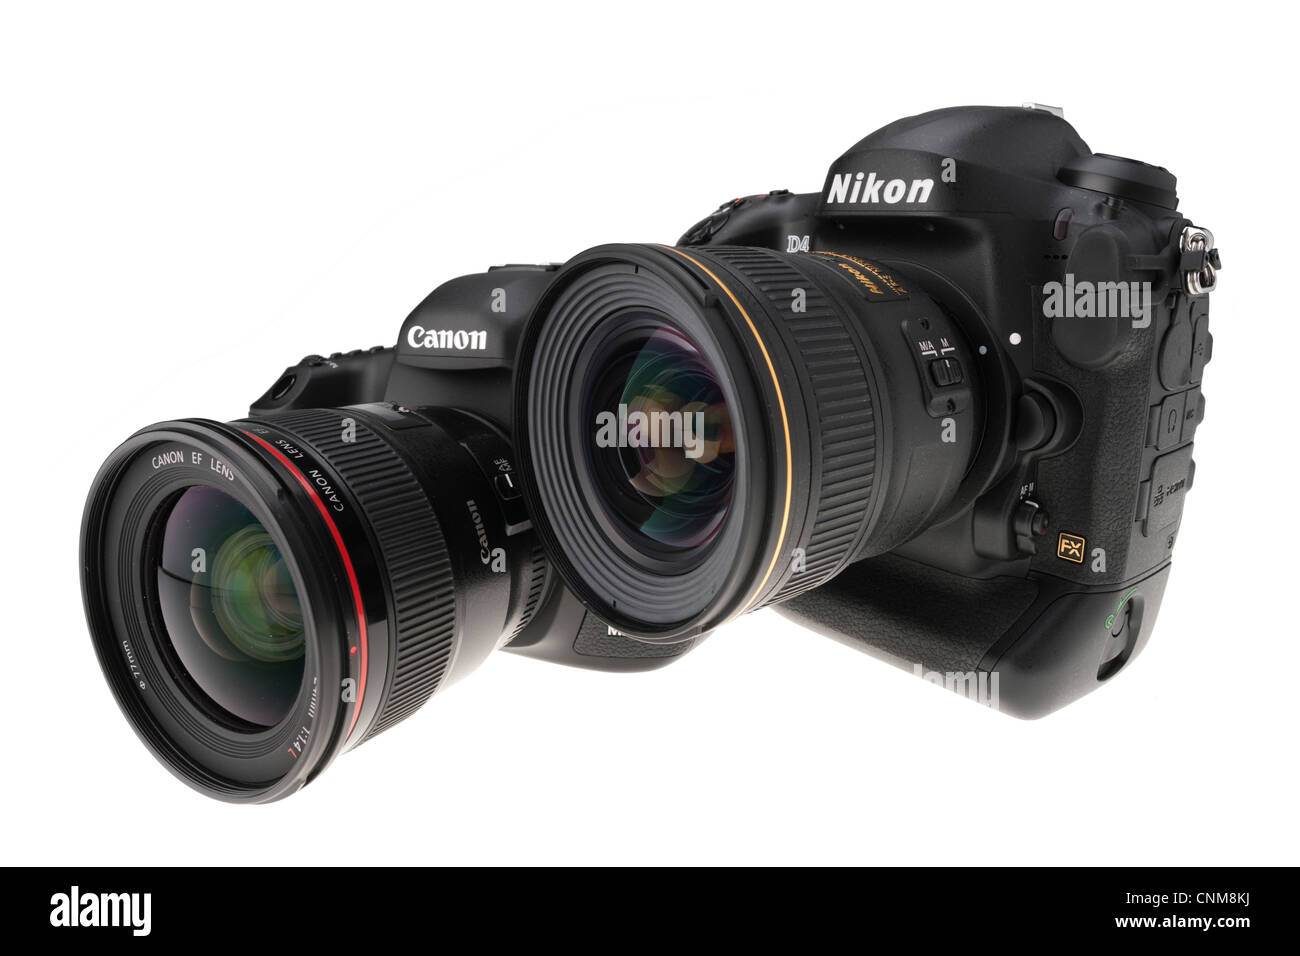 Fotoausrüstung - Nikon D4 und Canon EOS 5D MkIII DSLRs, professionelle Ausrüstung 2012 Stockfoto